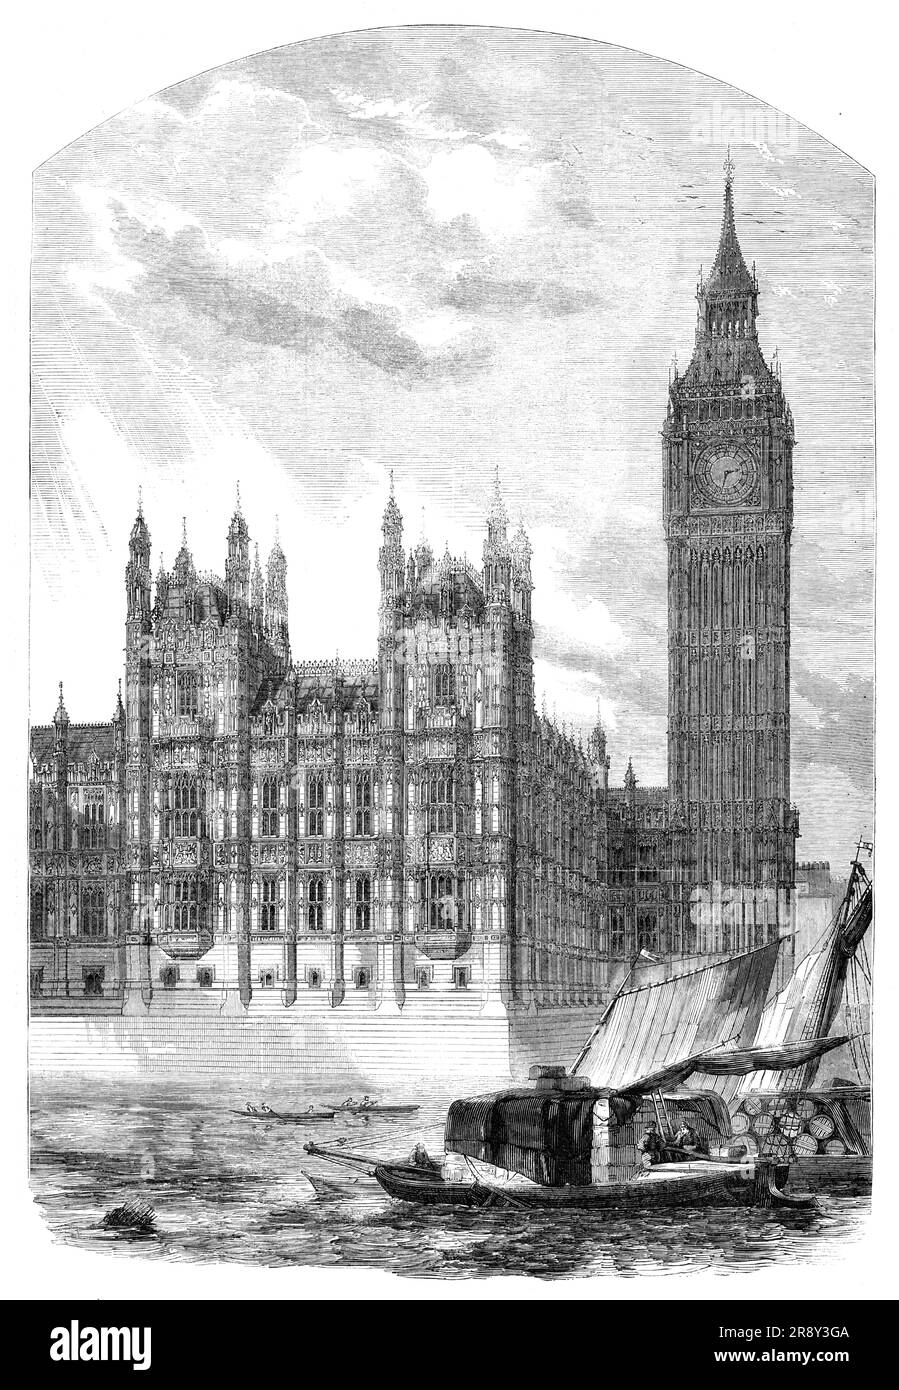 The Clock-Tower and Speaker's Residence, New Houses of Parliament, [London], 1857. Der Turm, in dem sich „Big Ben“ befindet, war ursprünglich als St. Stephen's Tower bekannt. Blick auf '...die Flussfront mit Blick auf die Themse, von deren Ufern [der Turm] majestätisch aufgeht...die Gesamthöhe des Turms bis zum Gipfel des Finals beträgt 310 Fuß. Das Dach besteht aus galvanisiertem Gusseisen, das Finale oben ist aus geschmiedetem Kupfer und Gold, und das Gesamtgewicht des Daches wird auf 300 Tonnen geschätzt... die Wände wurden unter zwei Auftragnehmern errichtet - dem unteren Teil des Uhrenturms, glauben wir, von Mr Stockfoto